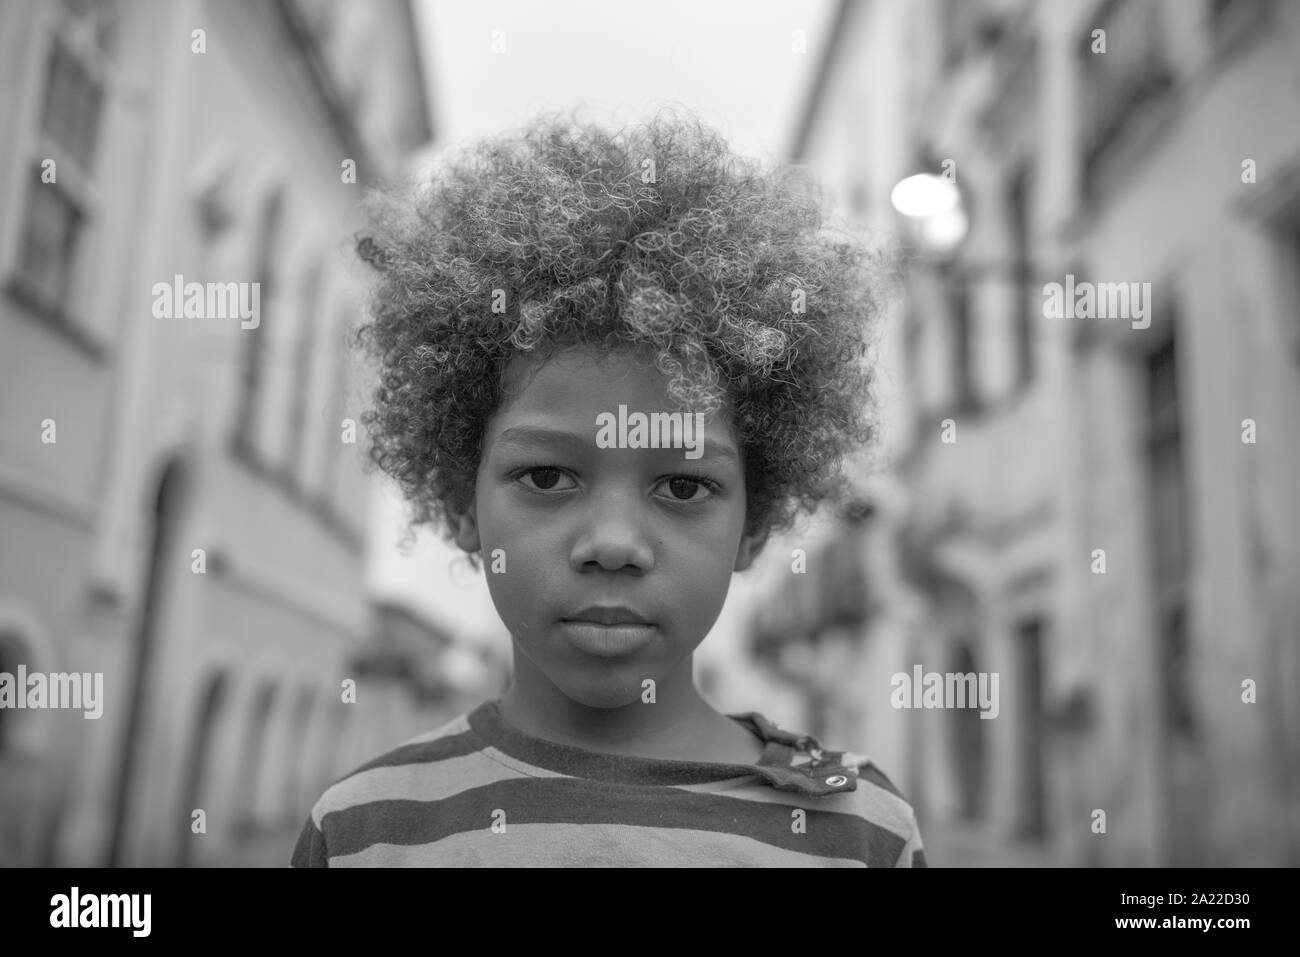 Beau garçon afro-brésilien avec des cheveux bouclés dans les rues Banque D'Images